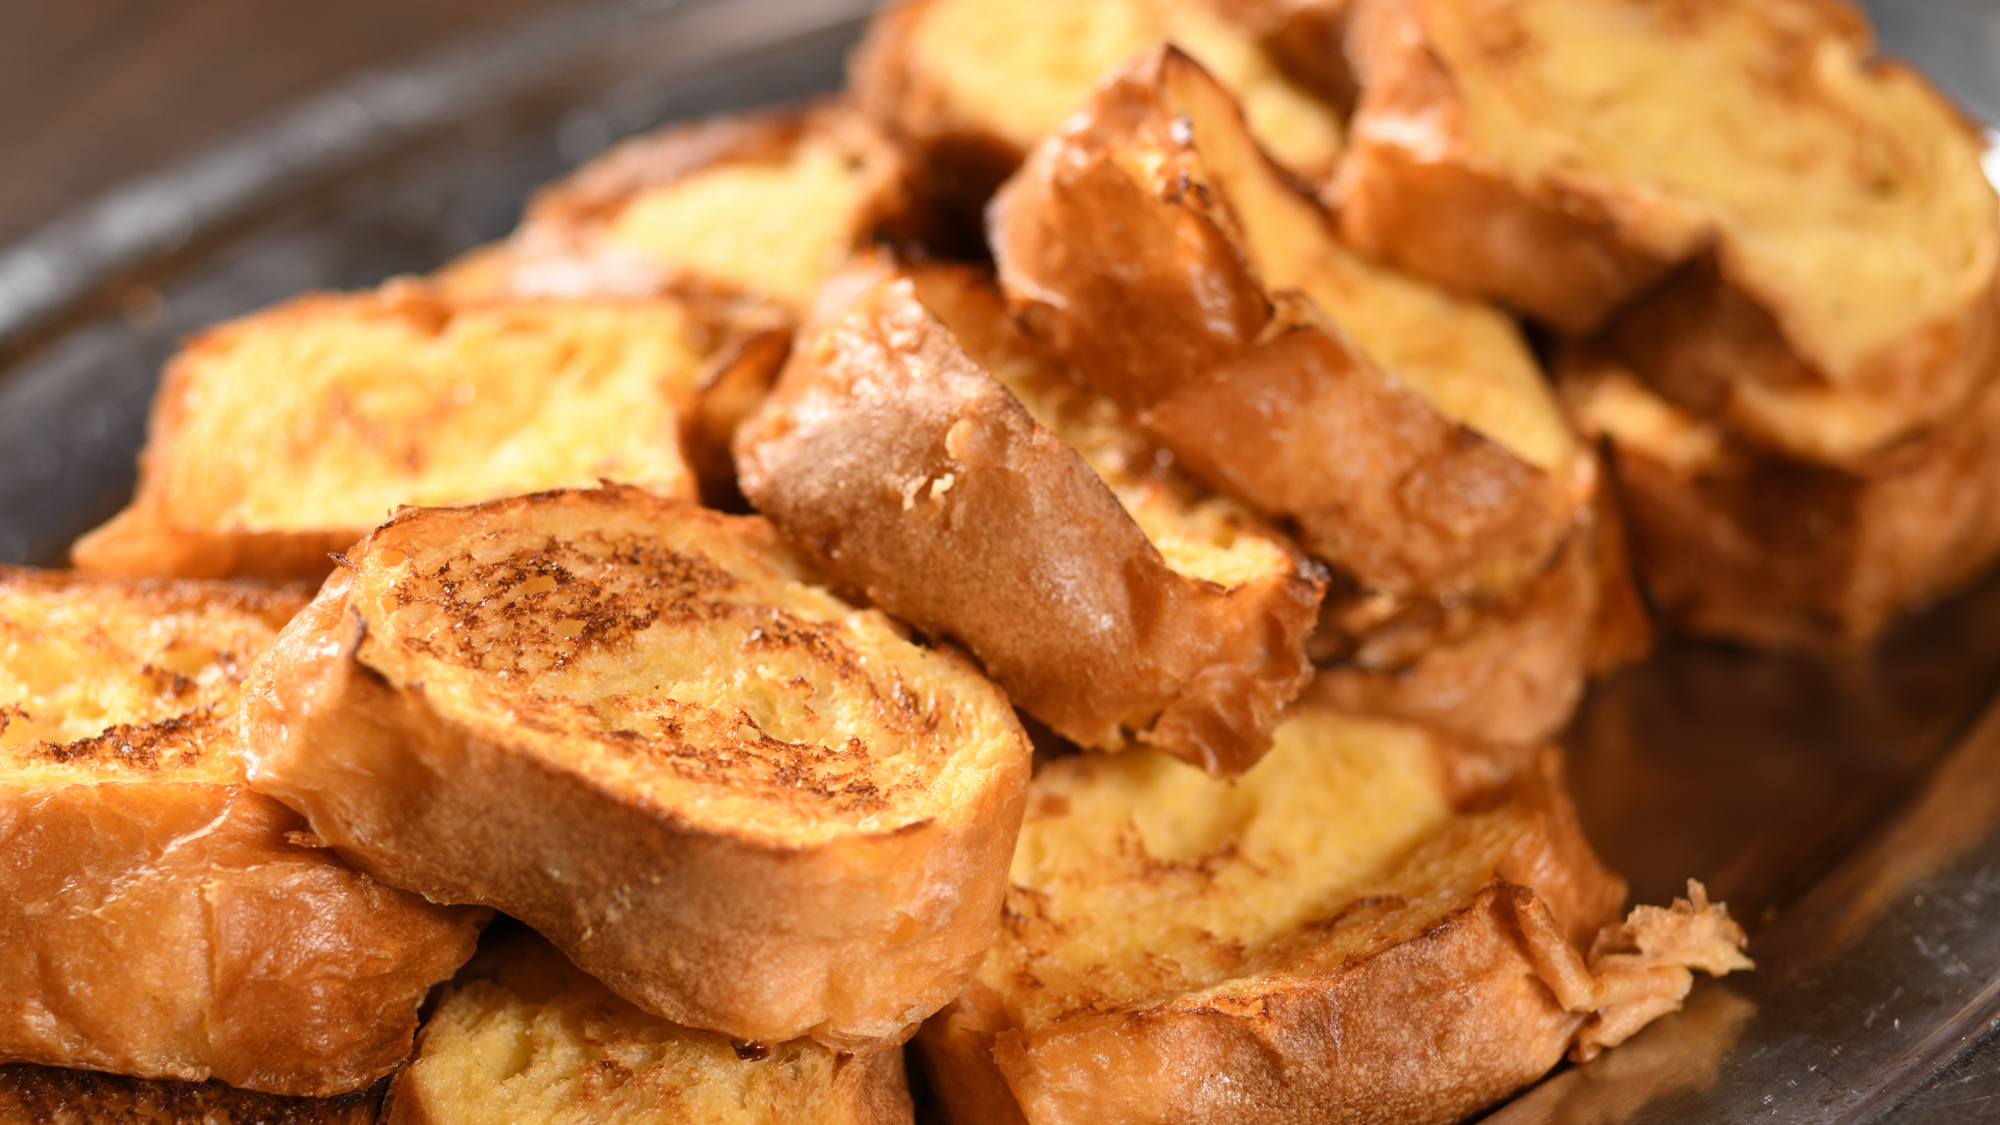 お客様の目の前で石窯で焼きあげる「ふわふわフレンチトースト」は人気の朝食メニュー!